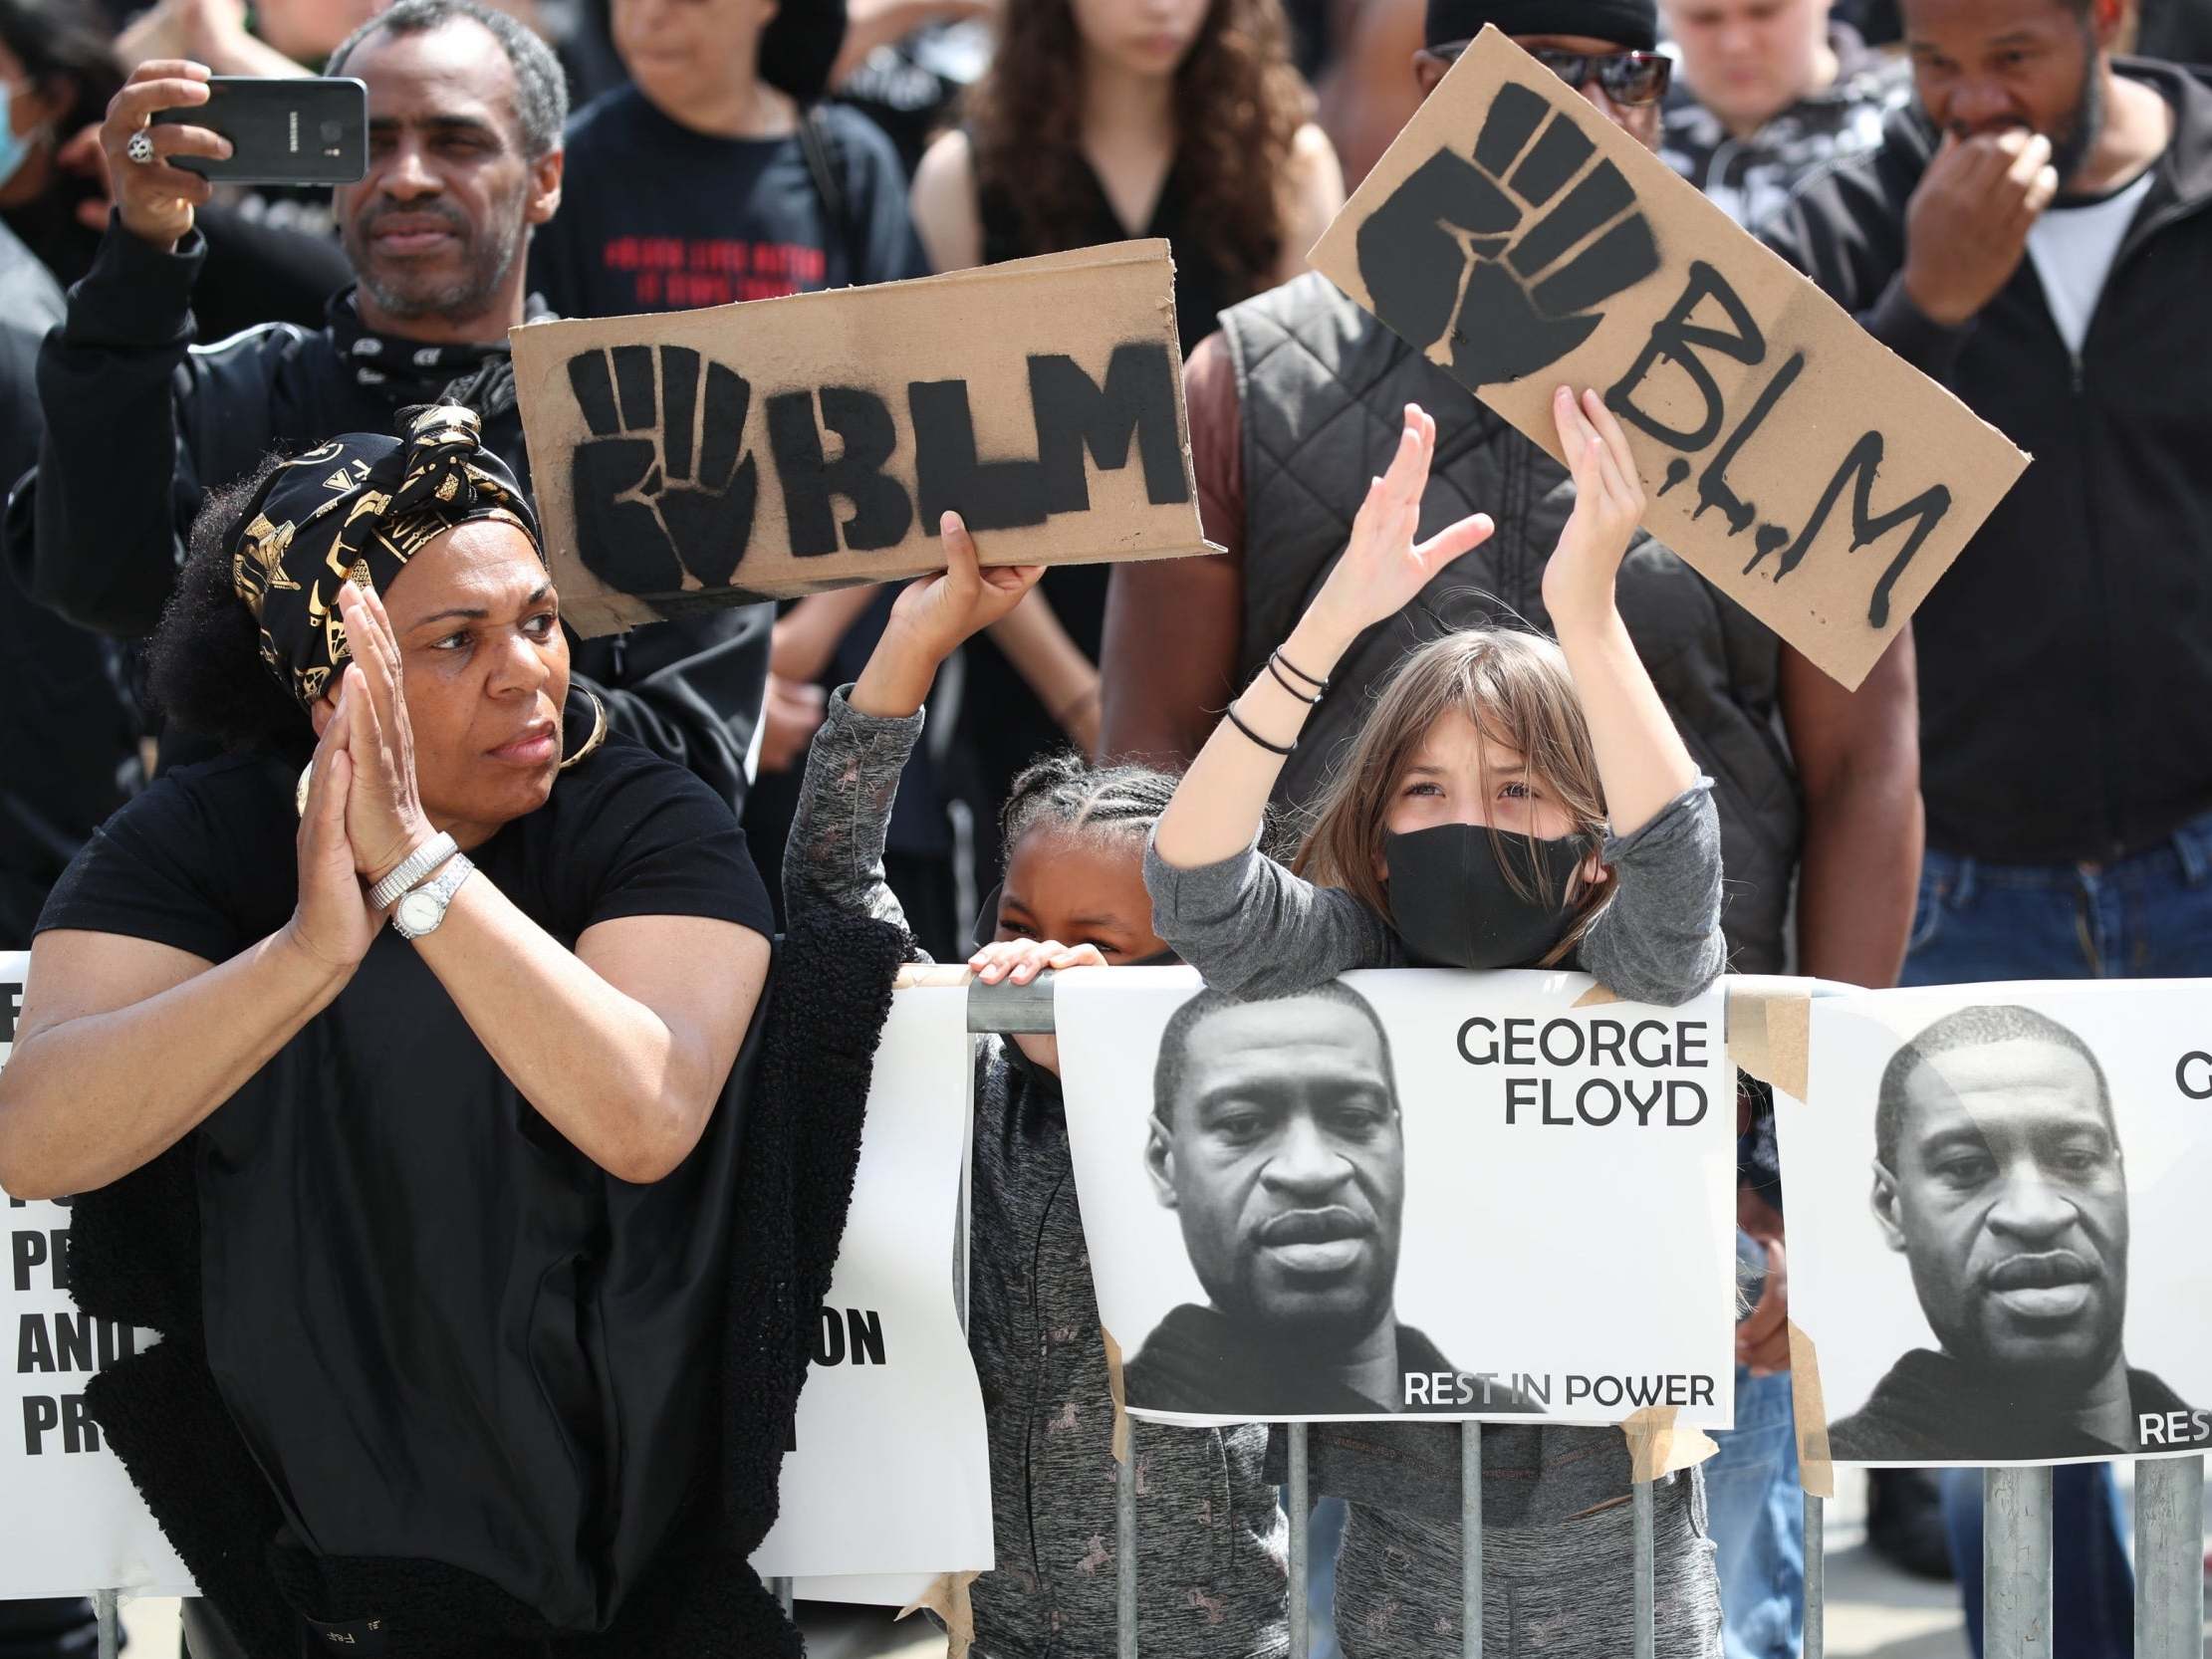 Demonstrators take part in a Black Lives Matter protest in Leeds